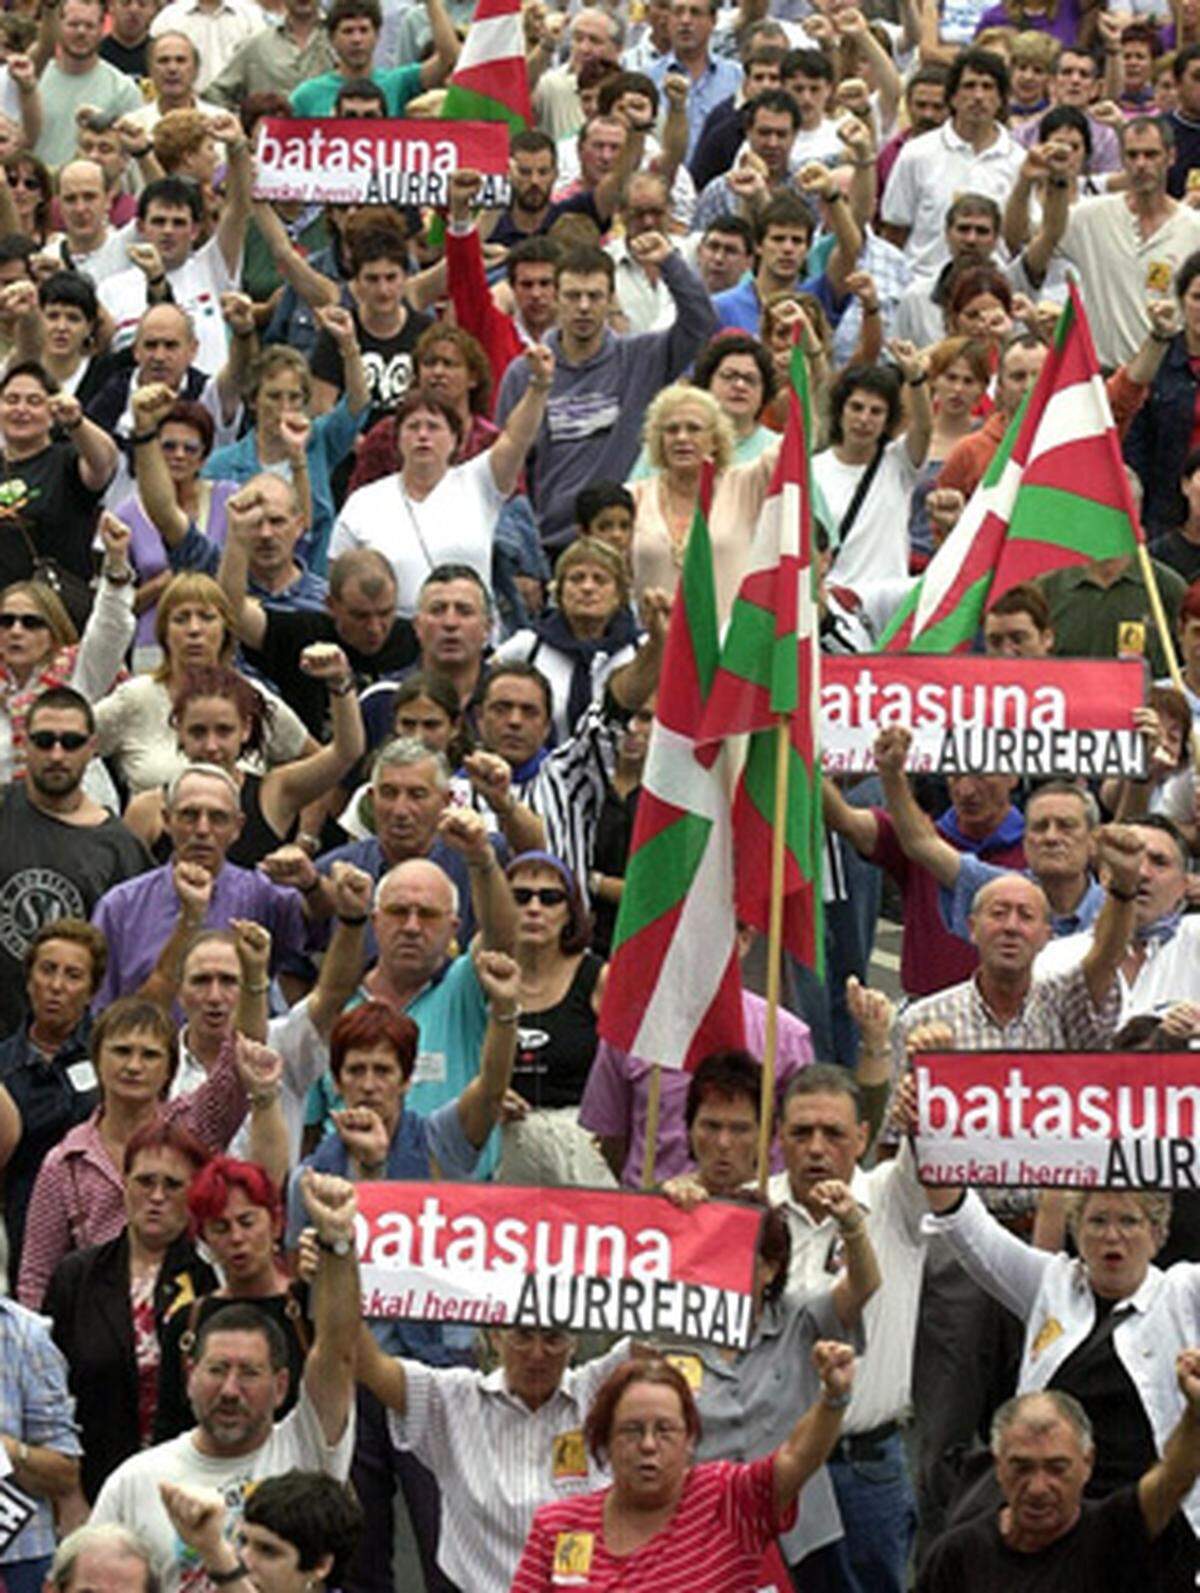 1978 erhielt Spanien eine Verfassung und wurde damit zu einer Monarchie. Diese Epoche der Transition bezeichnet den friedlichen Übergang der Diktatur zu einem demokratischen Staat. 1979 erhielten die baskischen Provinzen einen Autonomiestatus. 1978 entstand die Partei Herri Batasuna. Sie galt als politischer Arm der ETA und war im Regionalparlament des Baskenlandes vertreten.